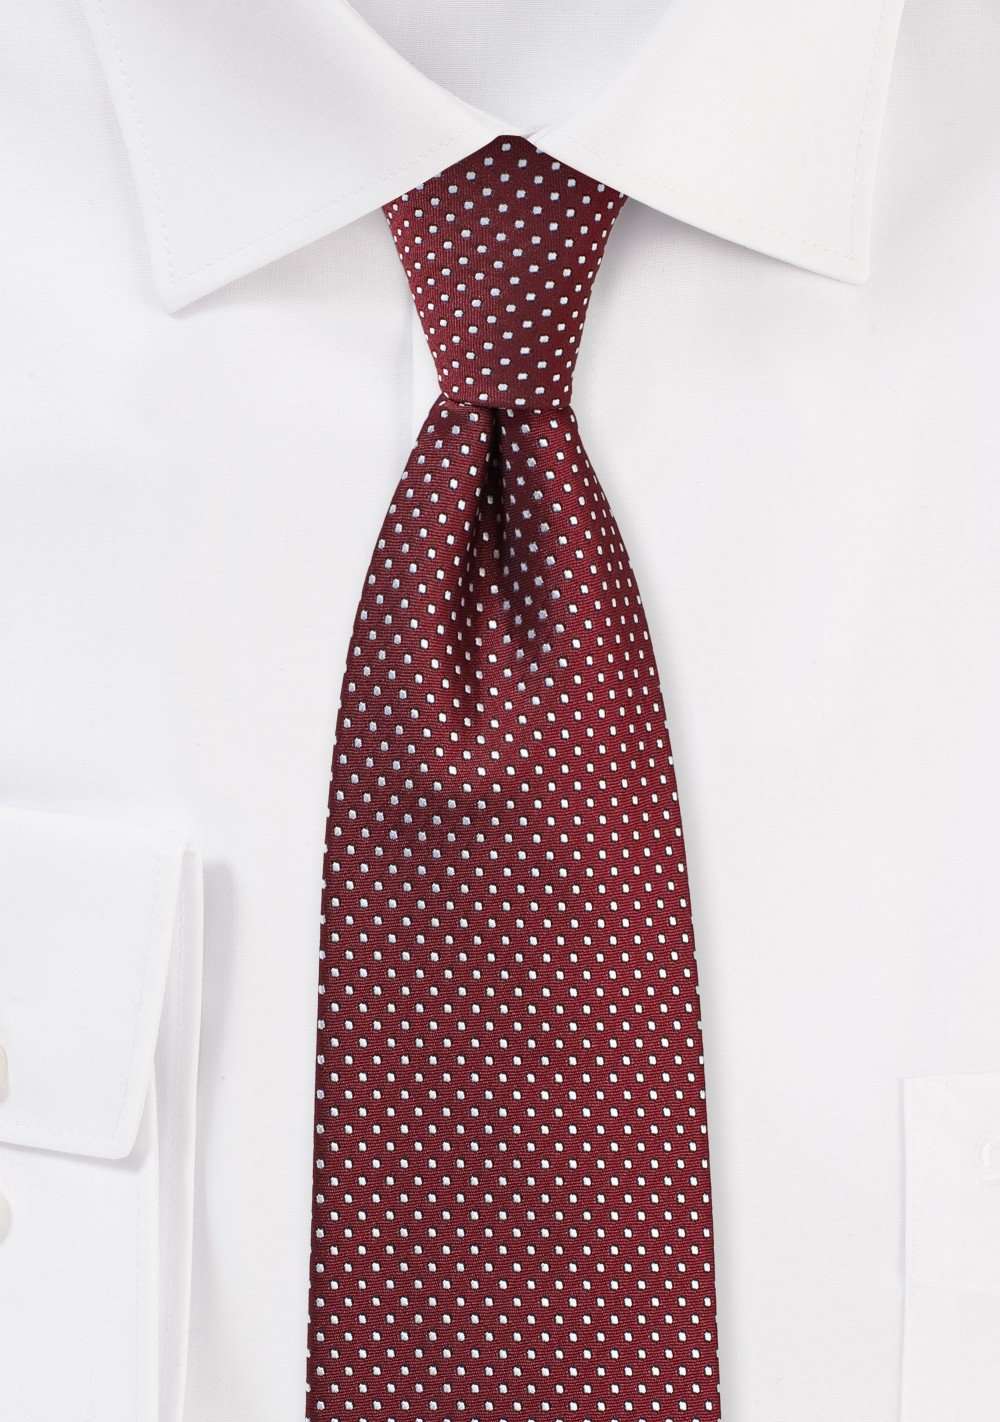 Burgundy Pin Dot Necktie - Men Suits